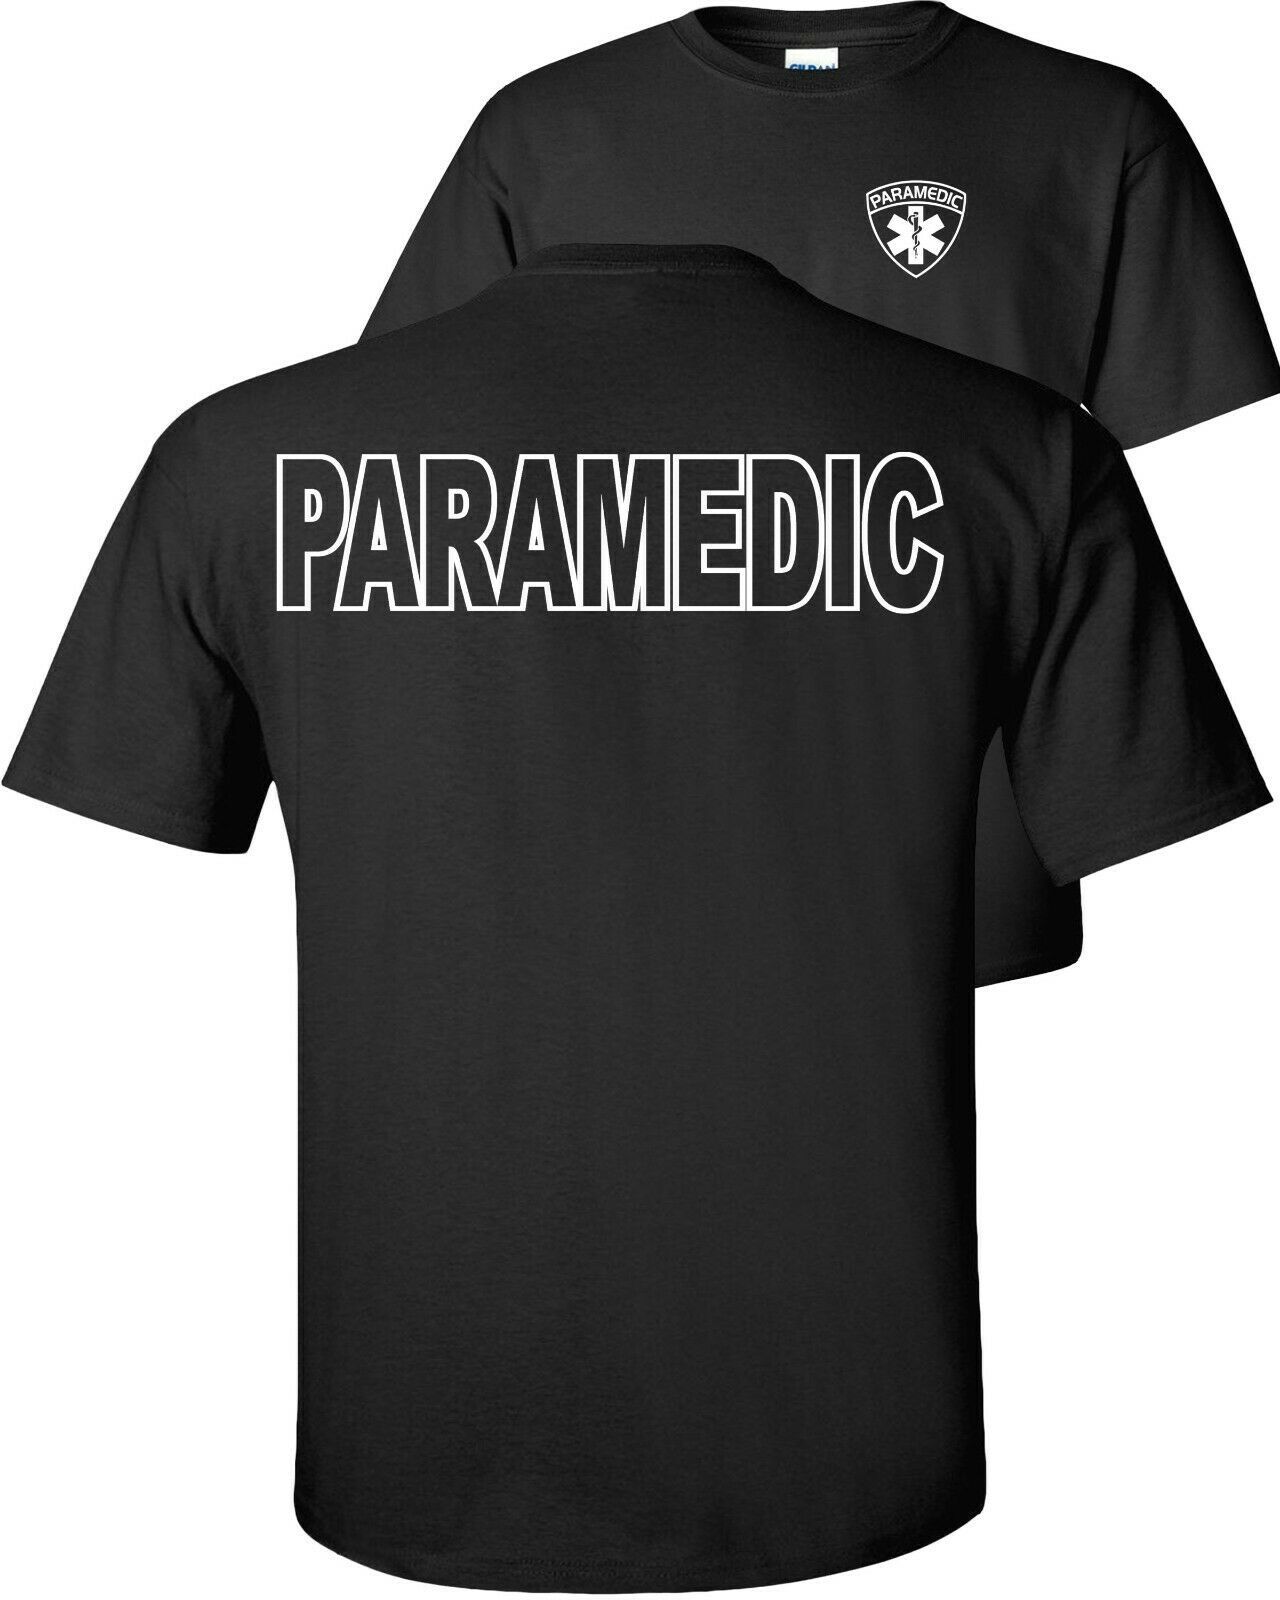 Paramedic T-shirt, emergency medical services, medical EMT, EMS, men's t-shirt